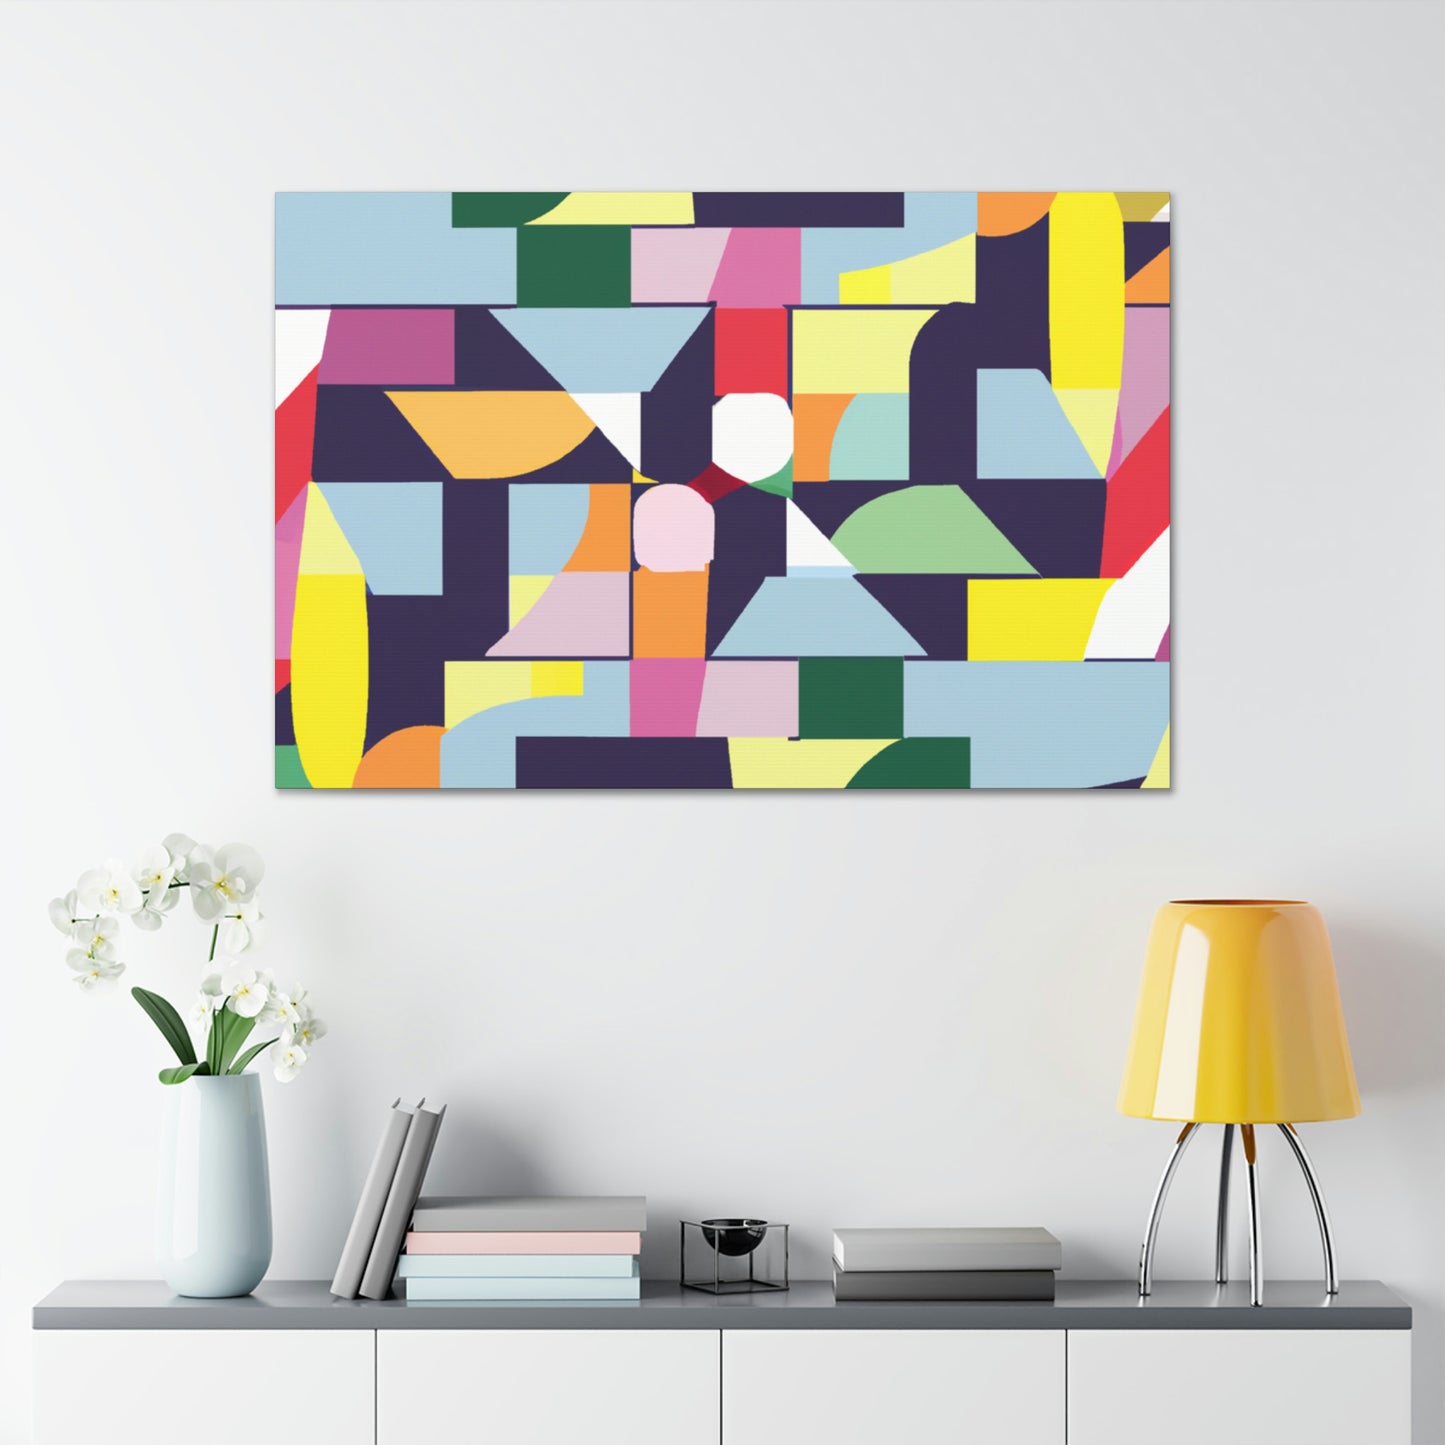 Luthera Appleby - Geometric Canvas Wall Art